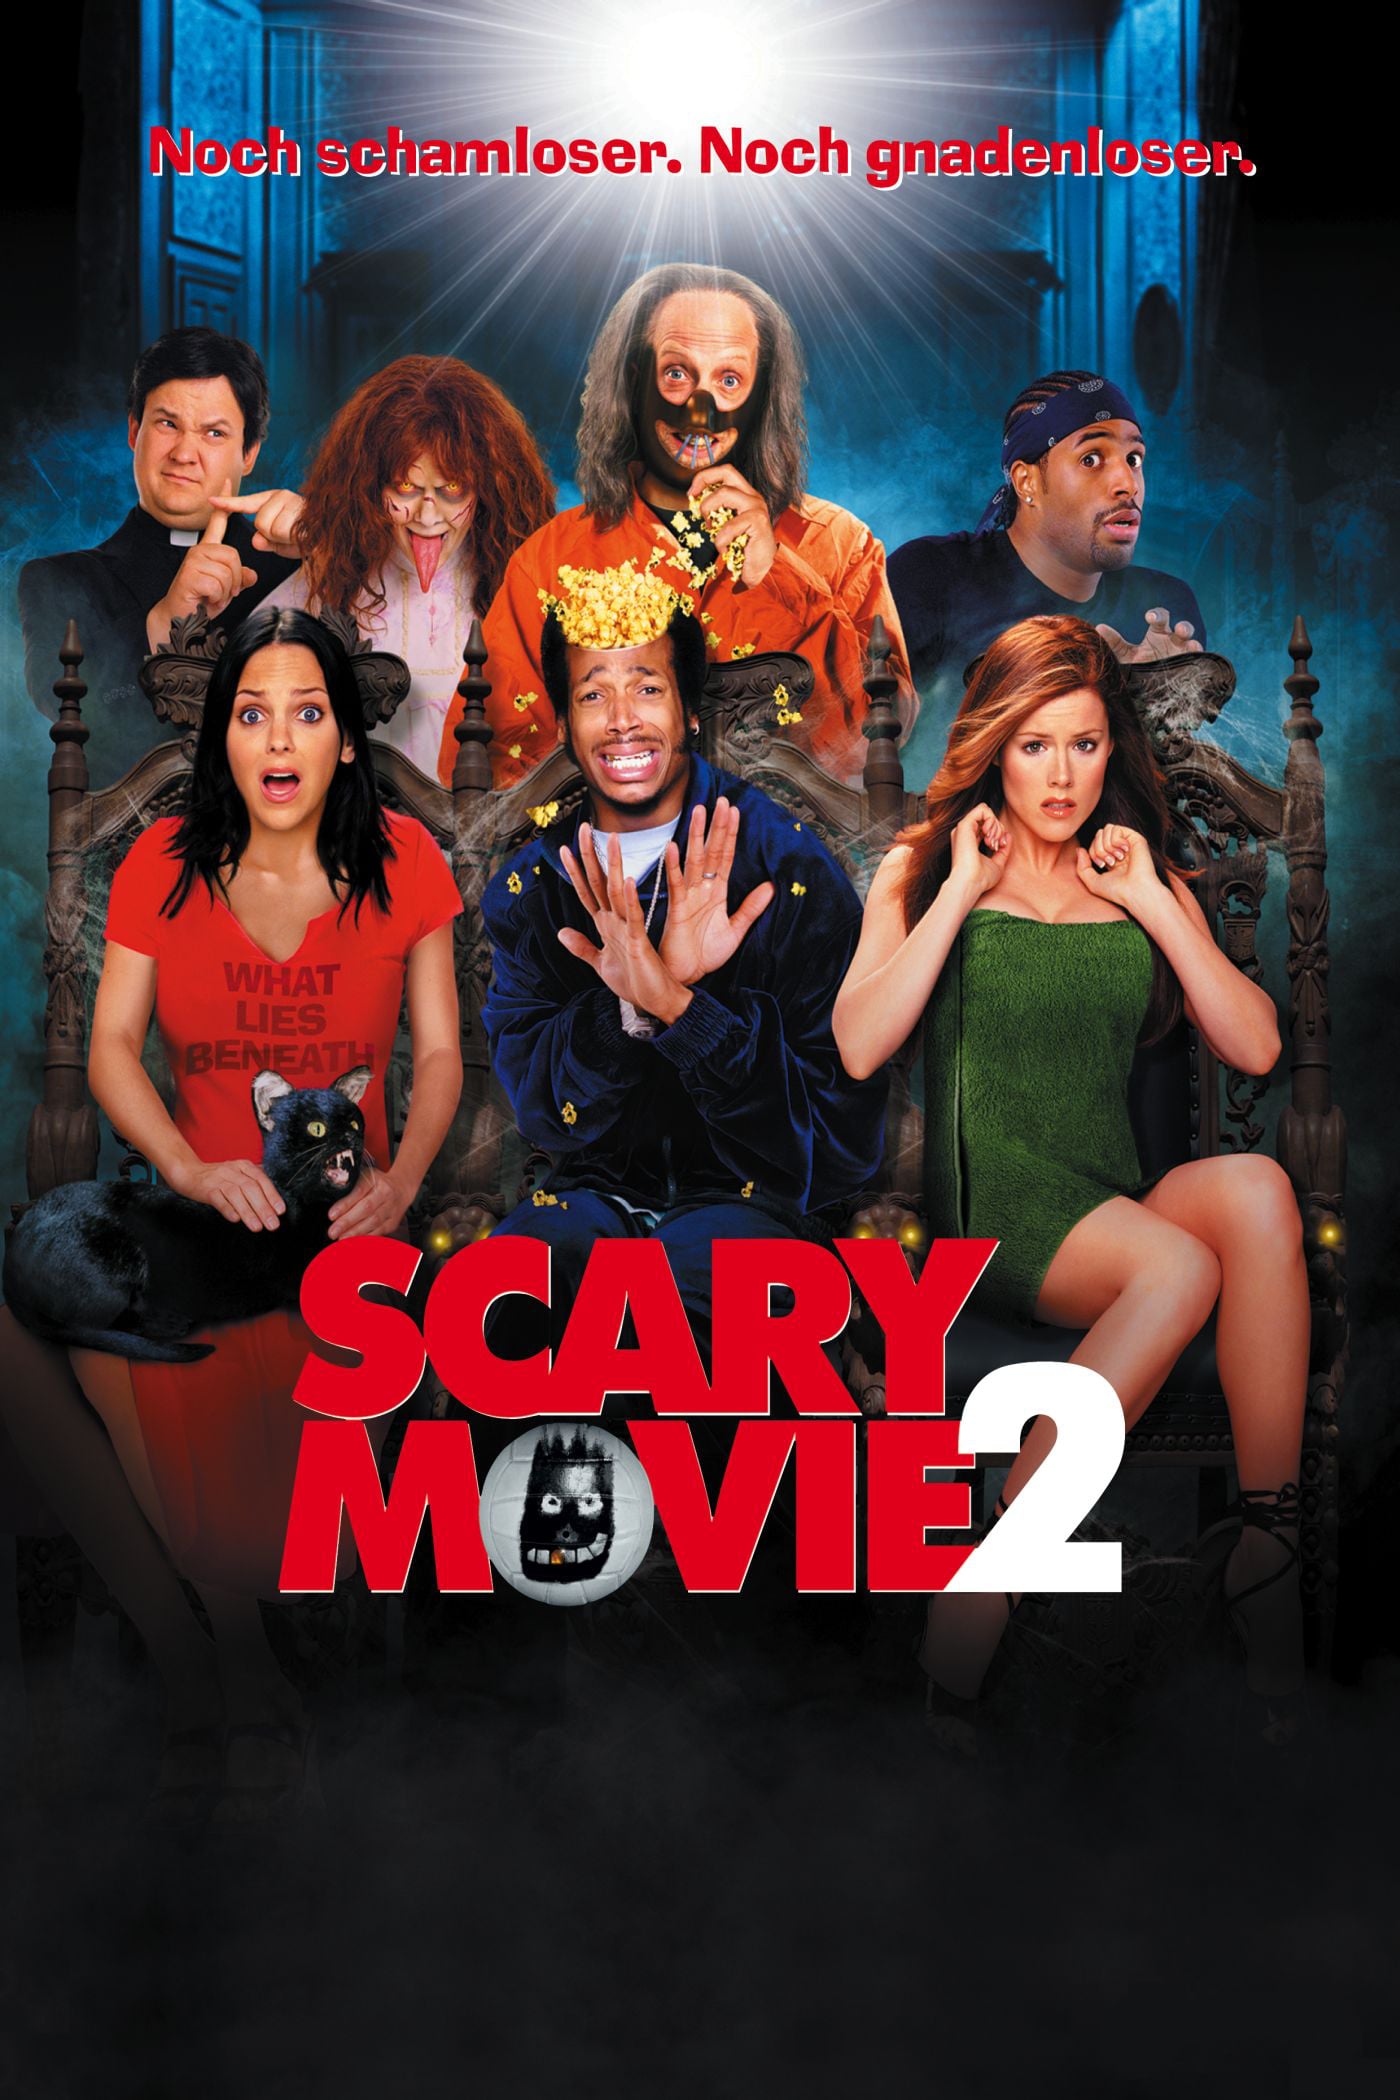 Plakat von "Scary Movie 2"